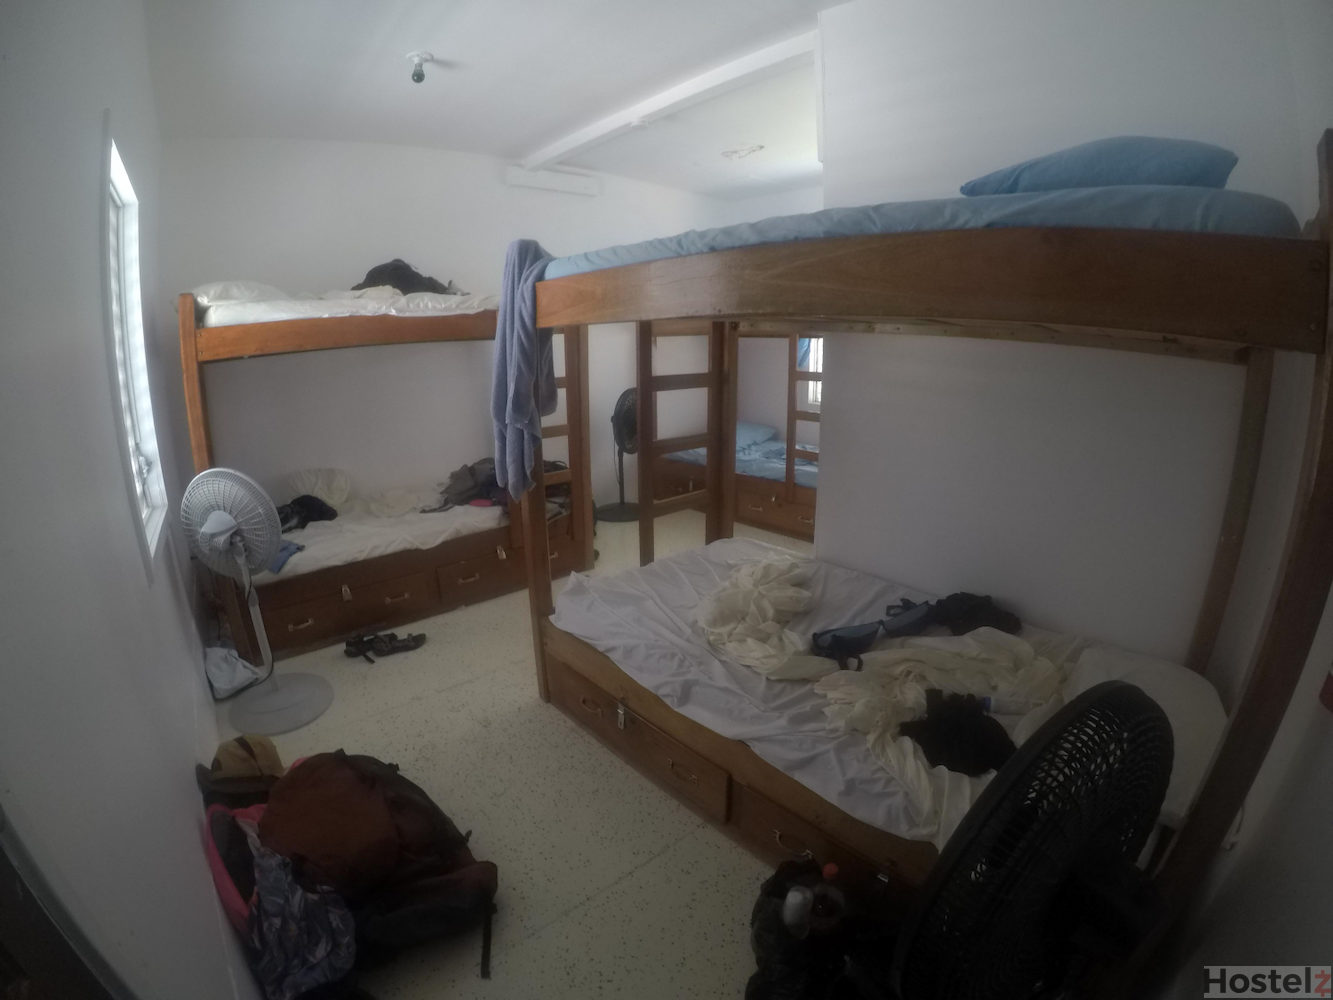 6-bed en suite dorm room